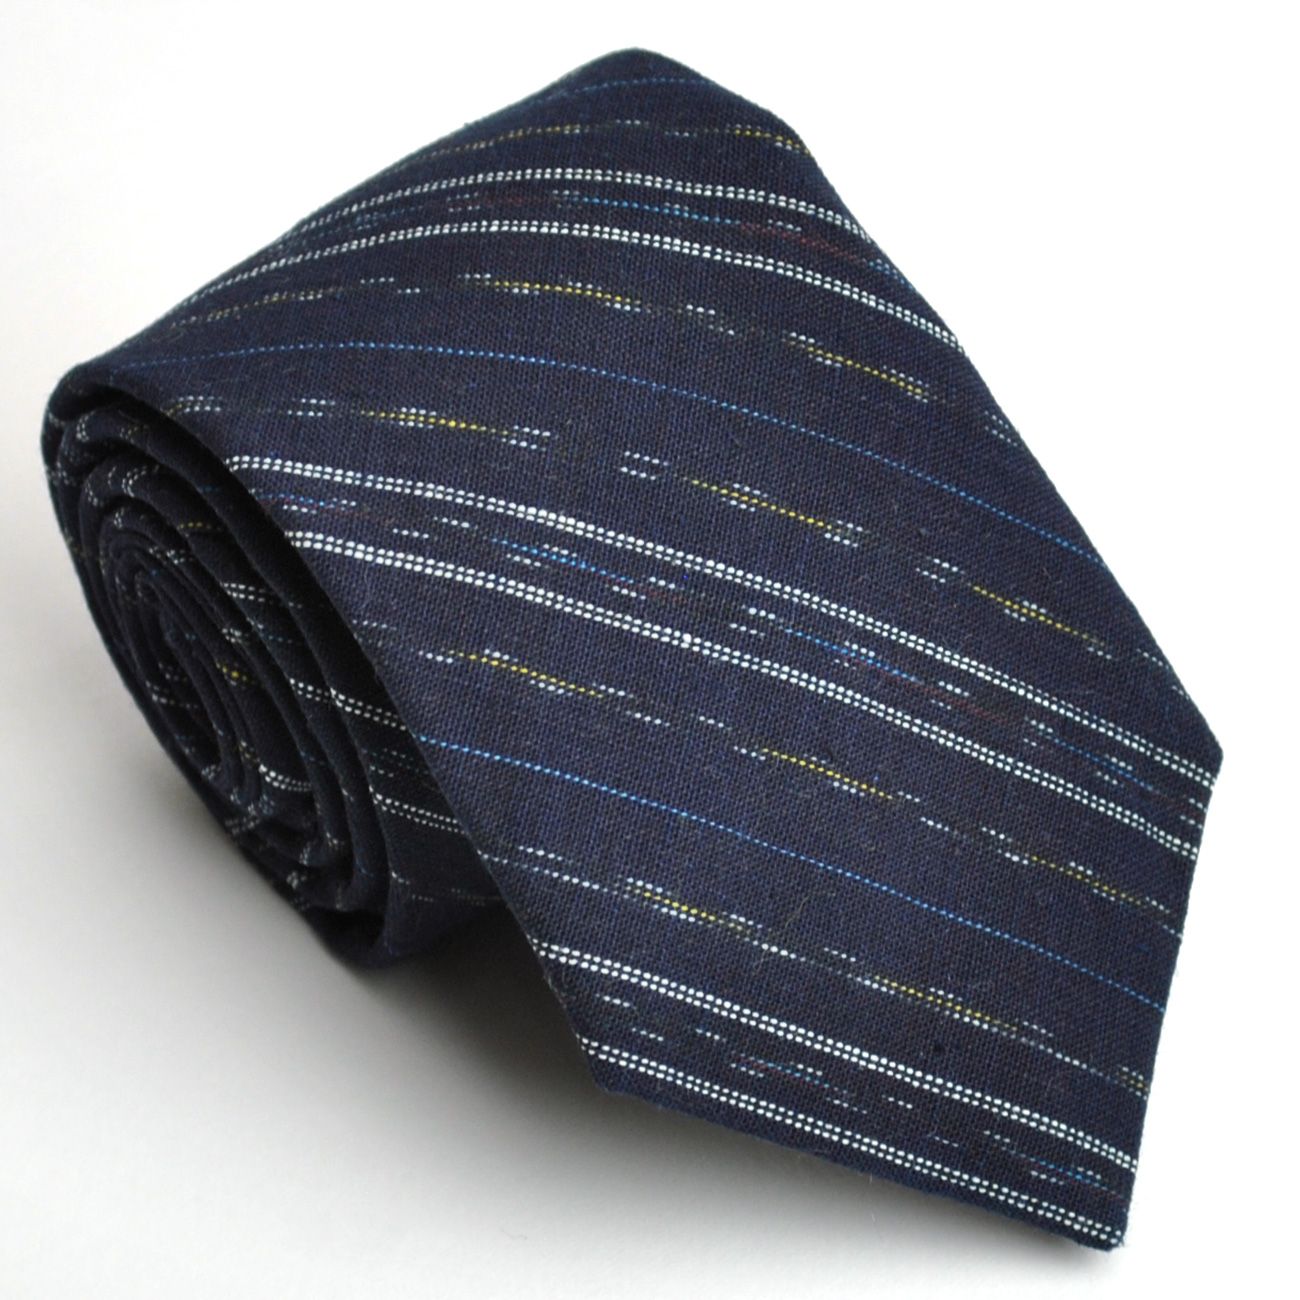 和柄ネクタイとしては大剣幅7.5cmのややナロータイで白い細いラインのレジメンタル柄のネクタイです。☆着物ネクタイ／和柄ネクタイ／